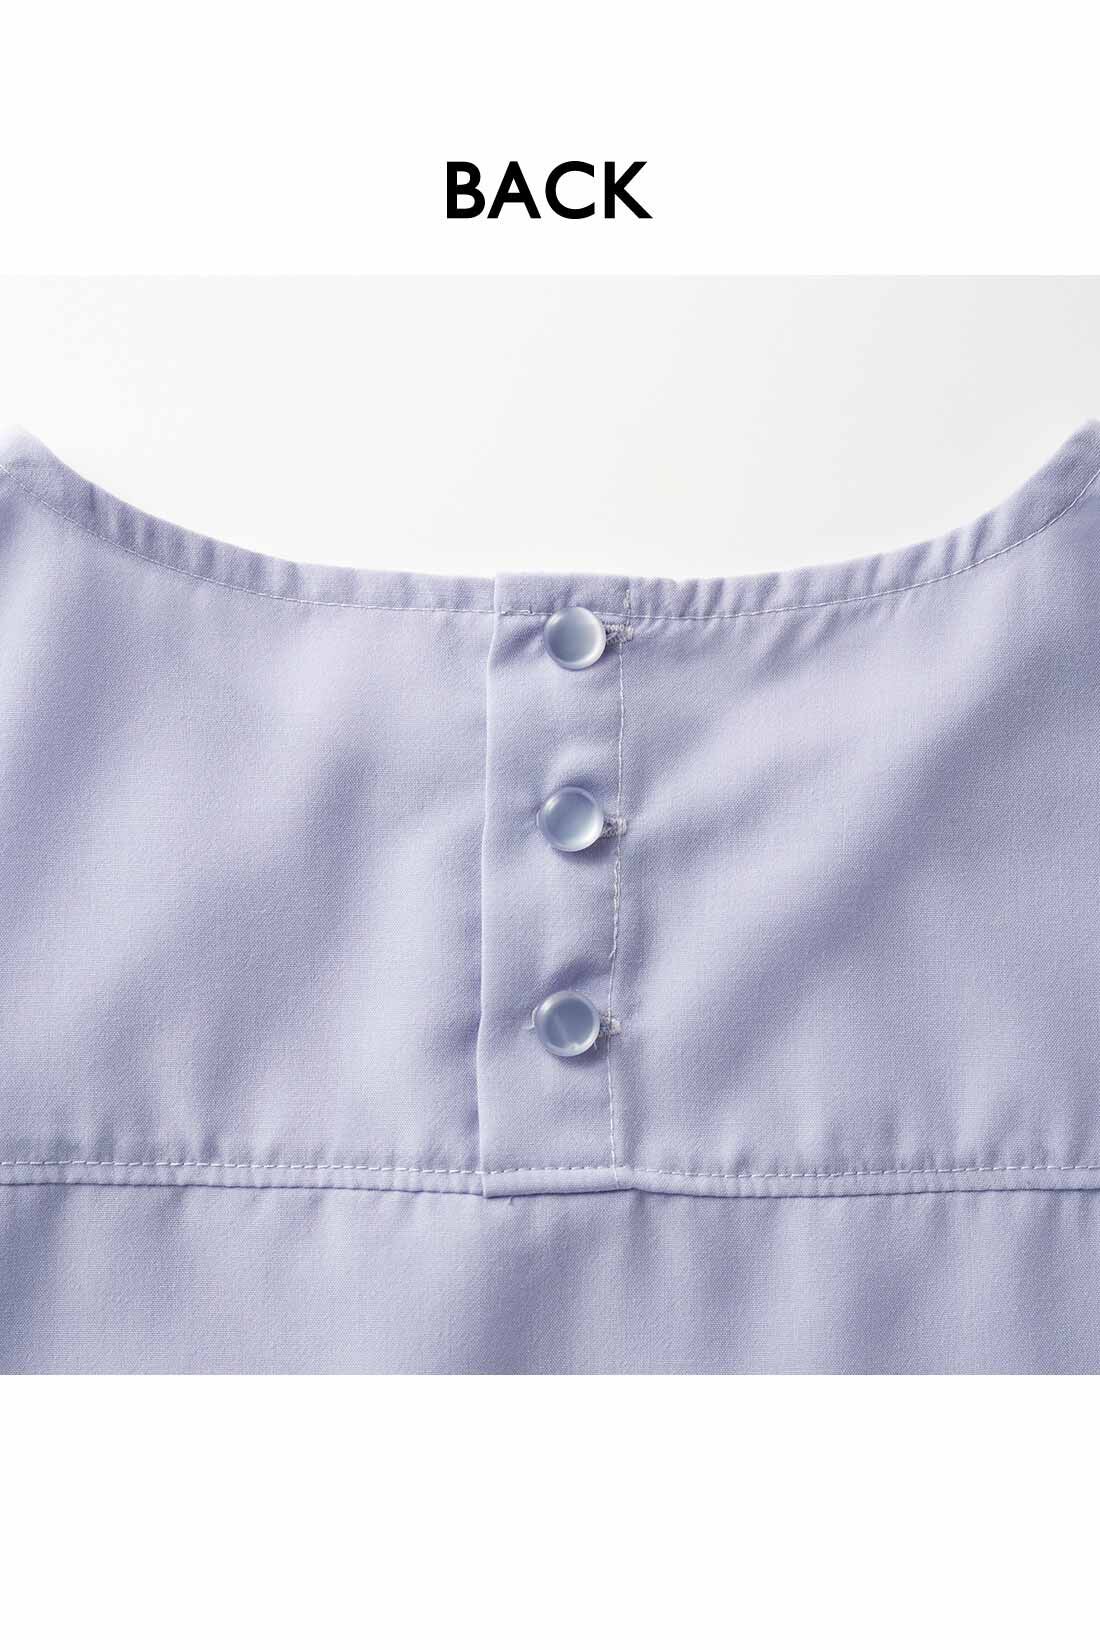 Real Stock|IEDIT[イディット]　ヴィンテージ風スパンローン素材のしわが気になりにくいシャツライクトップス〈ブラック〉|背中のボタンは、デザインポイントにも。ヨークでシャツのきちんと感もプラス。お届けするカラーとは異なります。